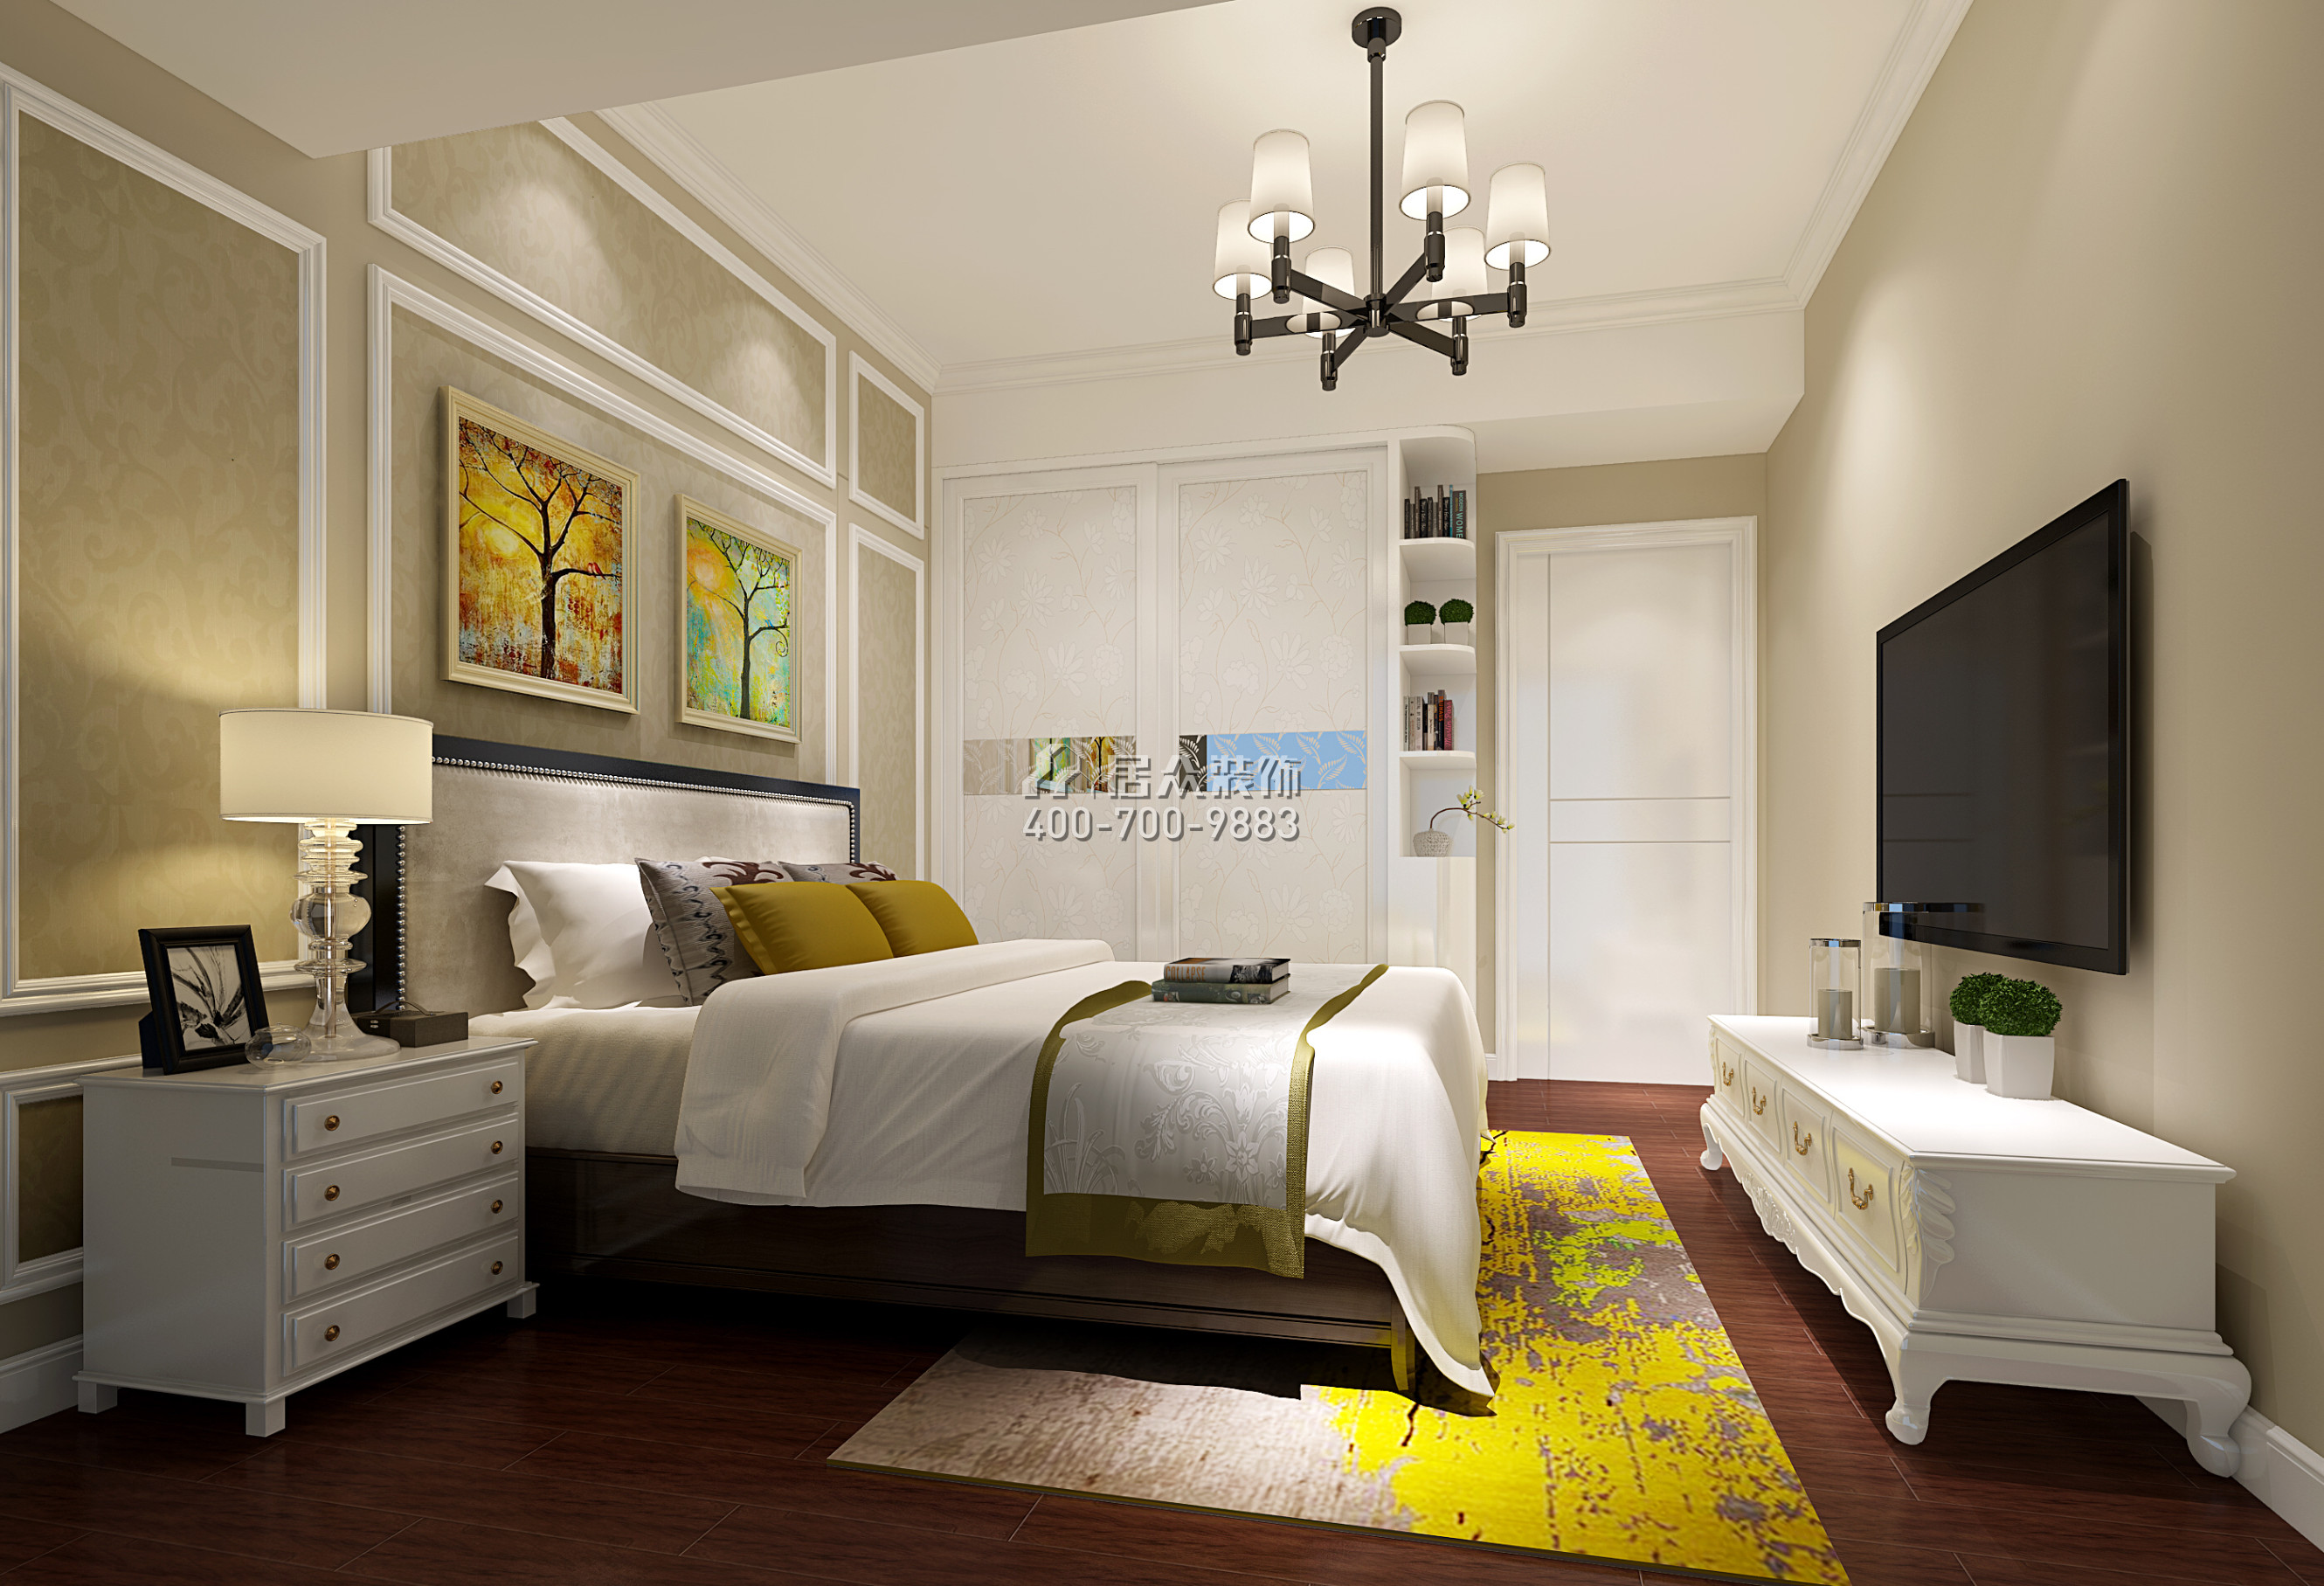 金地鹭湖1号89平方米现代简约风格平层户型卧室装修效果图